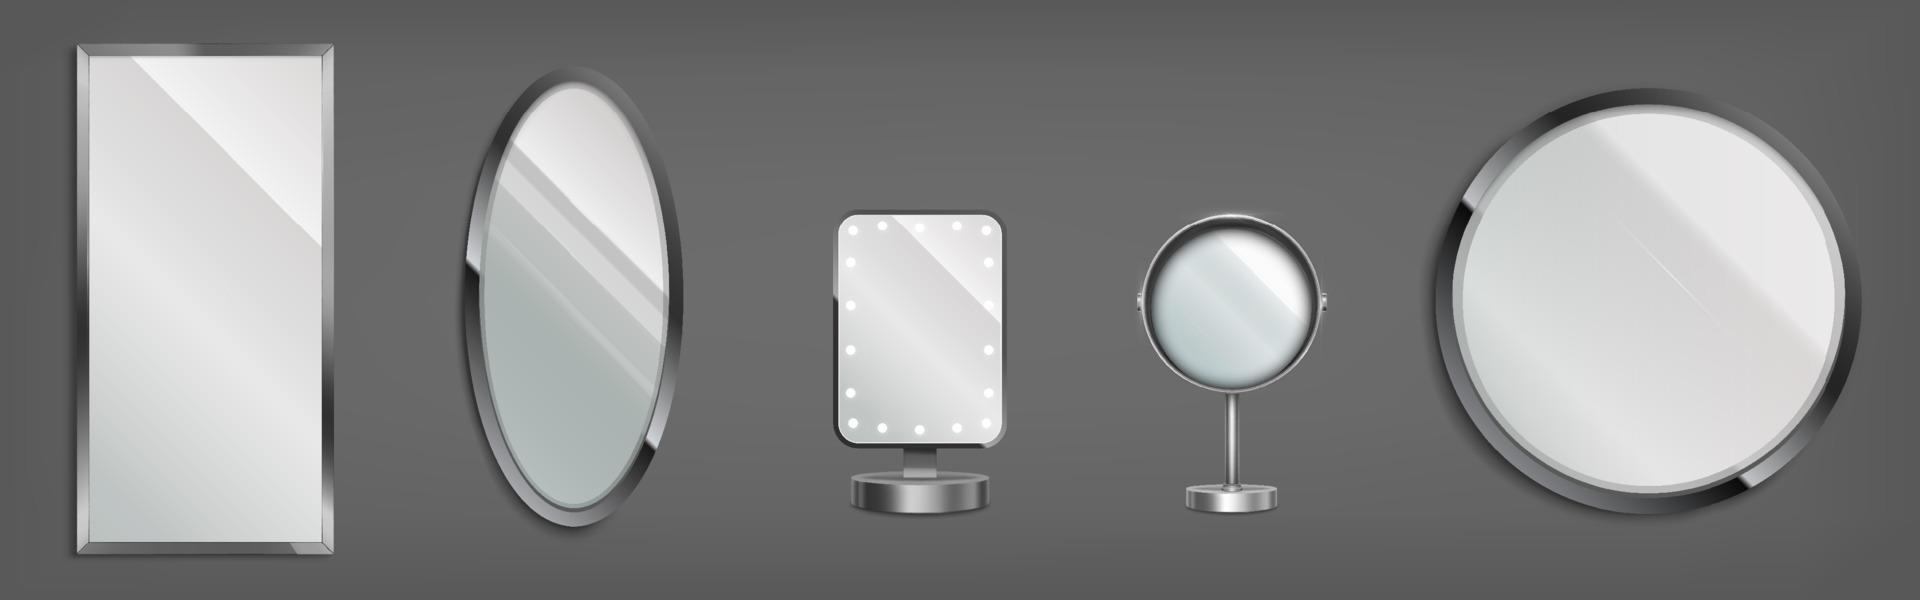 3D-Spiegel, Schminktisch und dekorative Gläser vektor